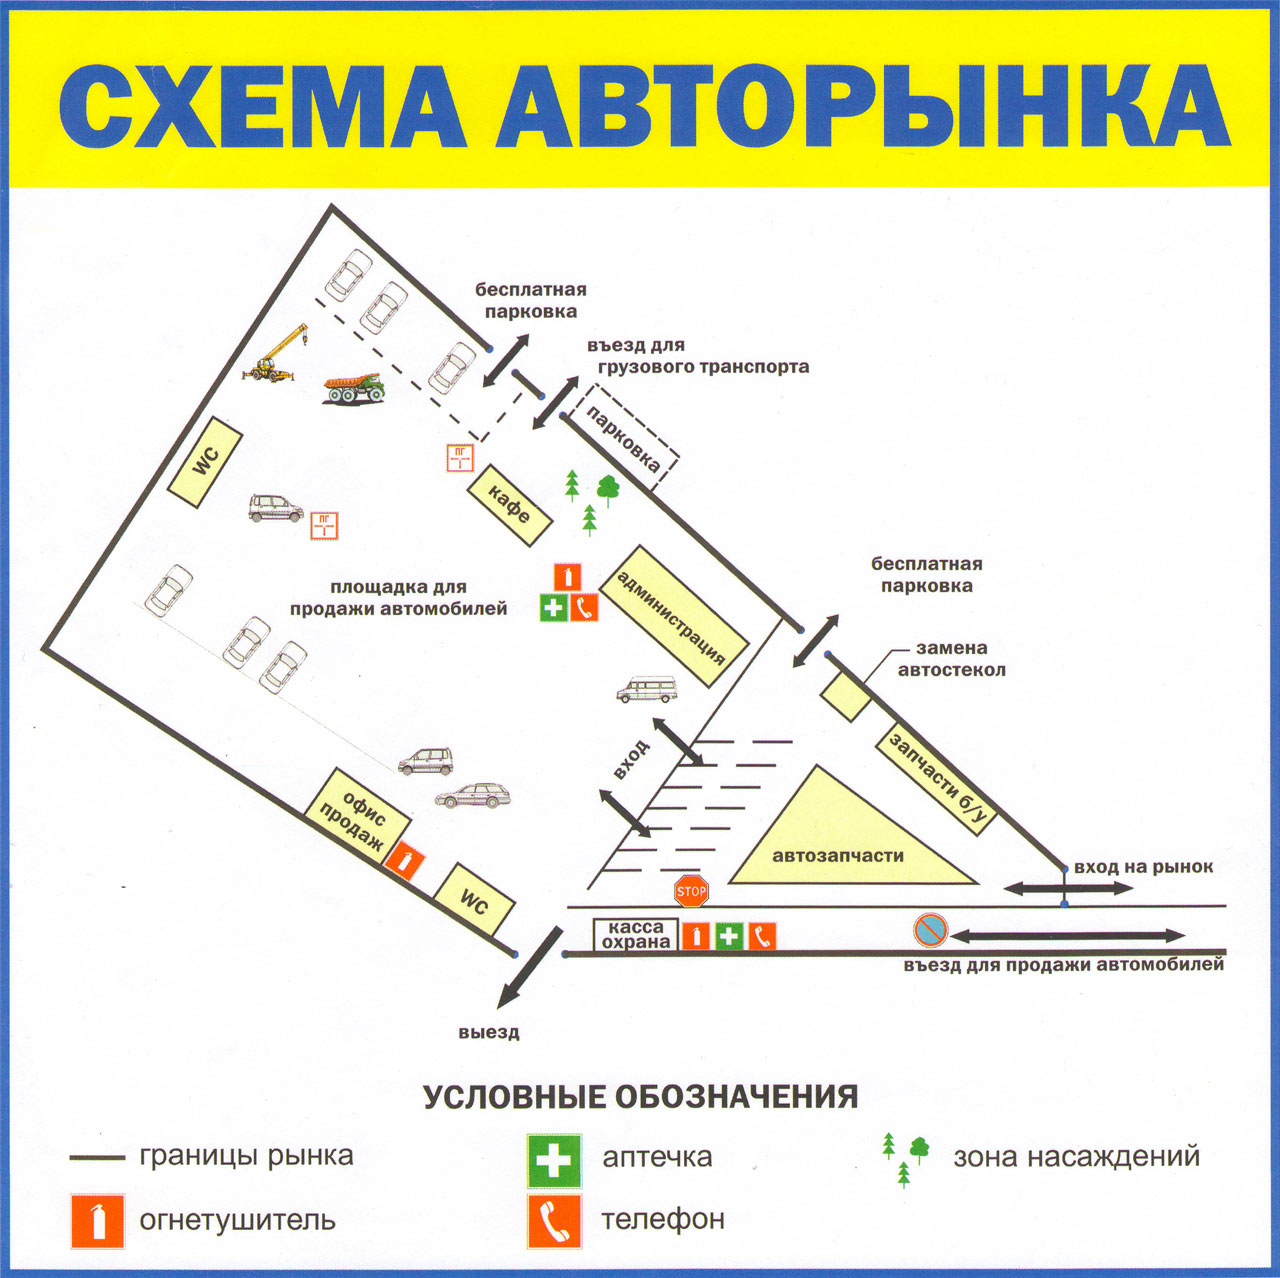 Местоположение рынок. Схема рынка Садовод в Москве. Садовод план рынка схема. Садовод схема парковок. Карта садовода рынок.